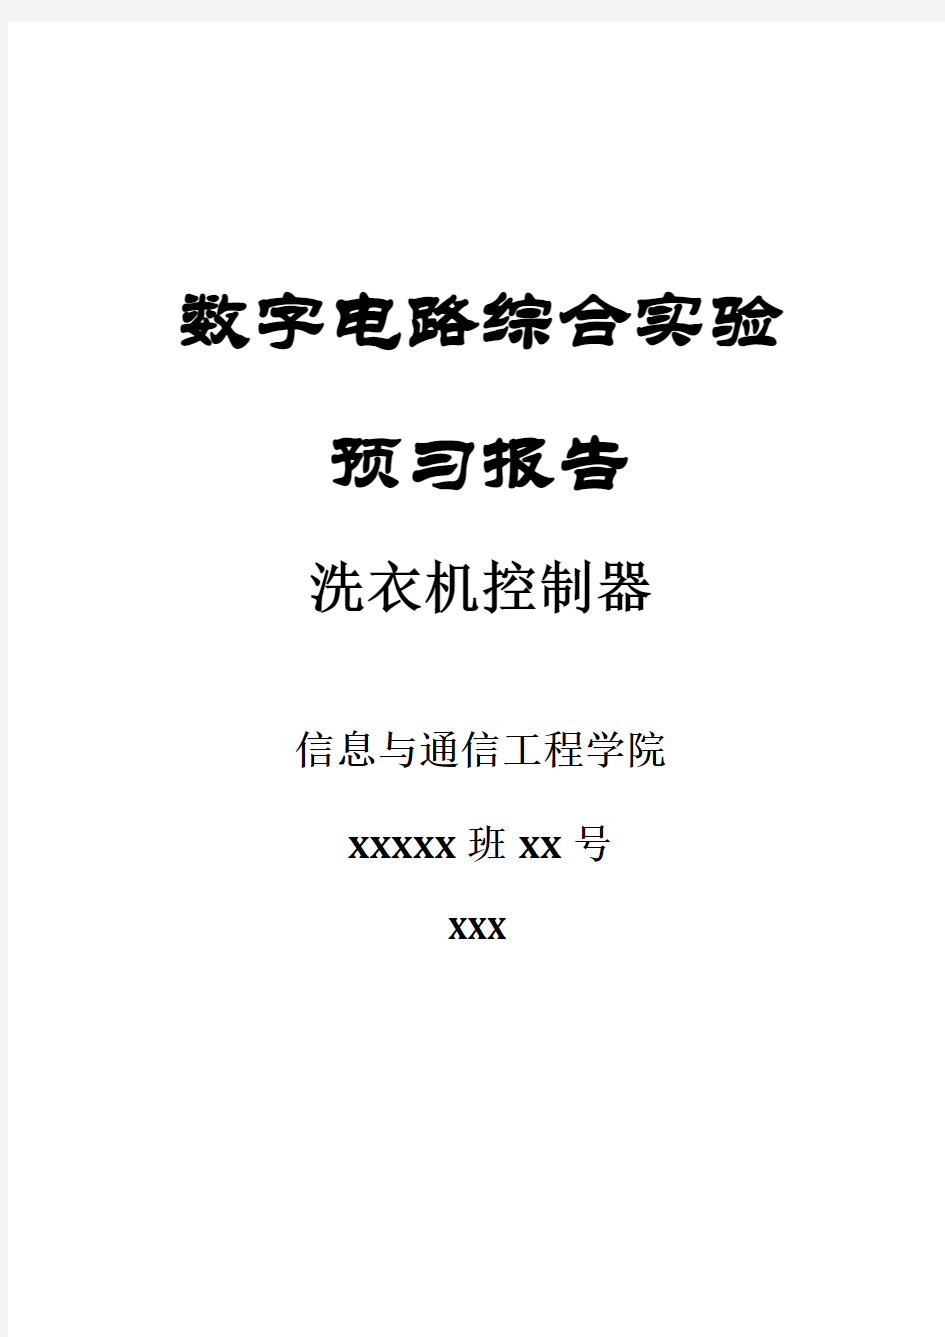 北京邮电大学 数字电路综合实验报告 洗衣机控制器